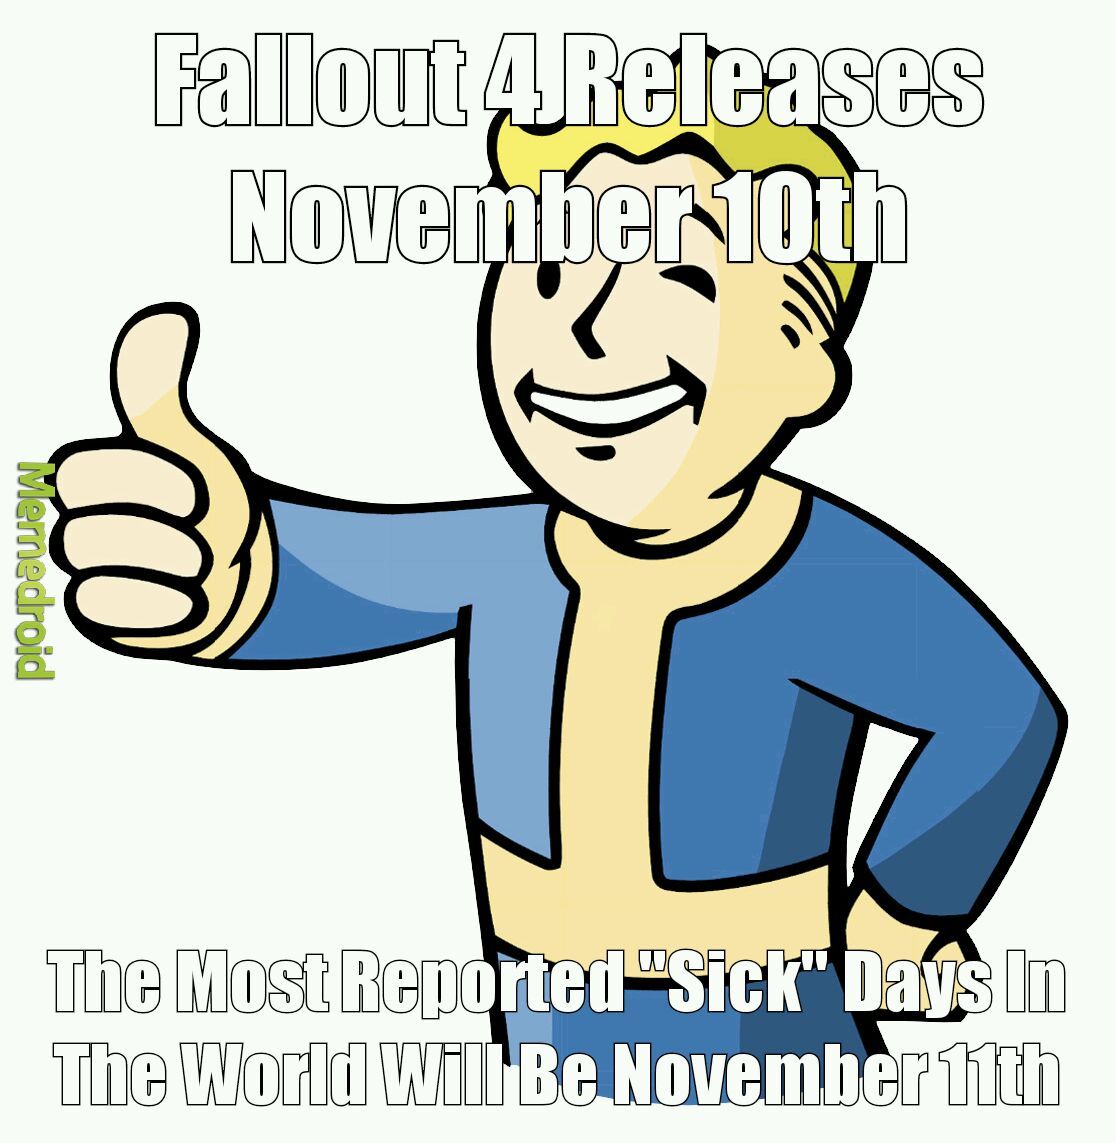 Fallout 4 - meme